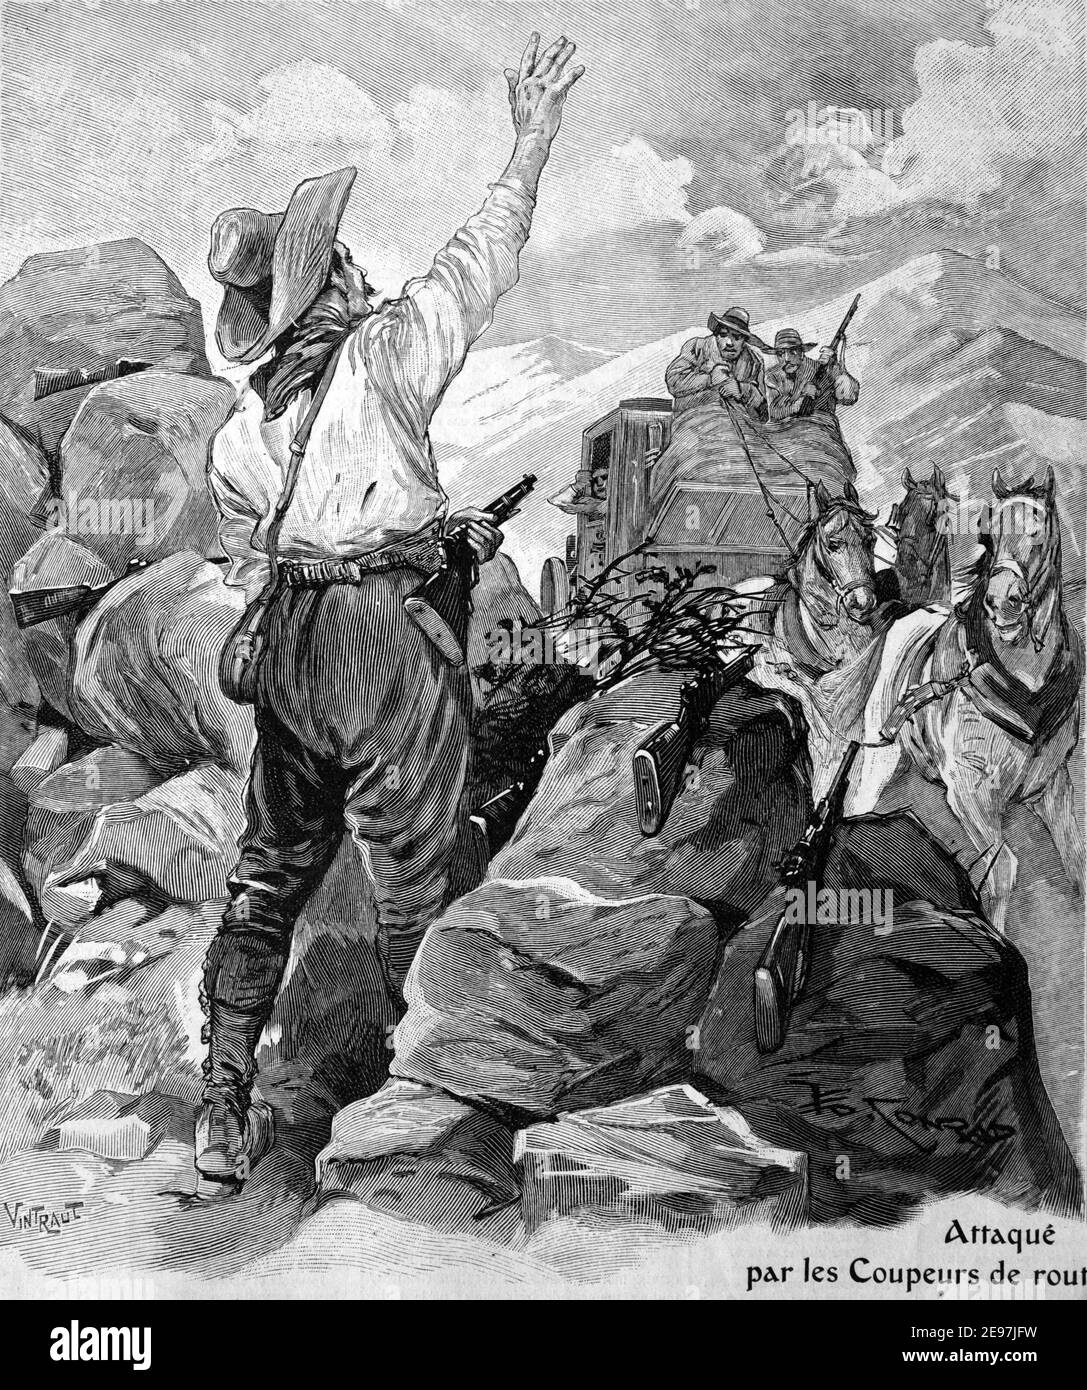 Highwatmen blocus Road en attaque sur Mail Coach, ou Stagecoach attaqué par des bandits aux Etats-Unis 1911 Vintafe Illustration ou gravure Banque D'Images